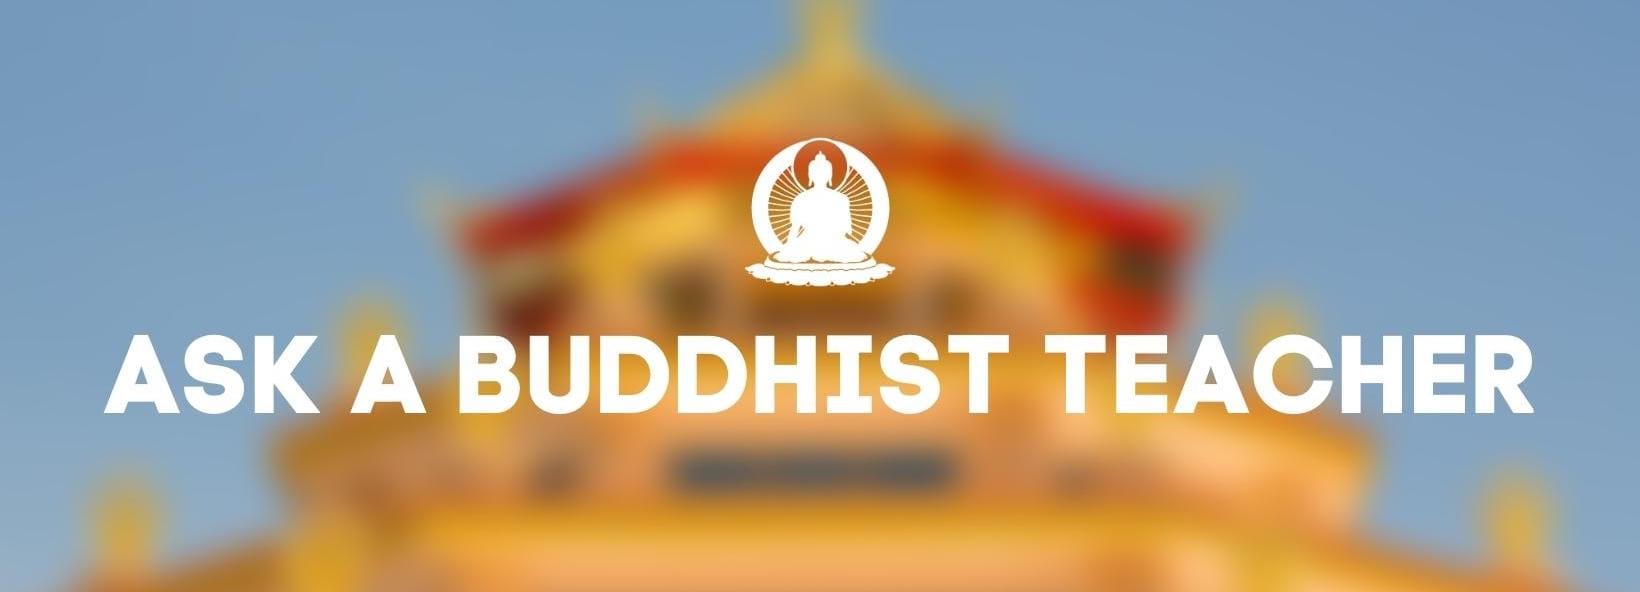 ask a buddhist teacher (1640 × 700px)